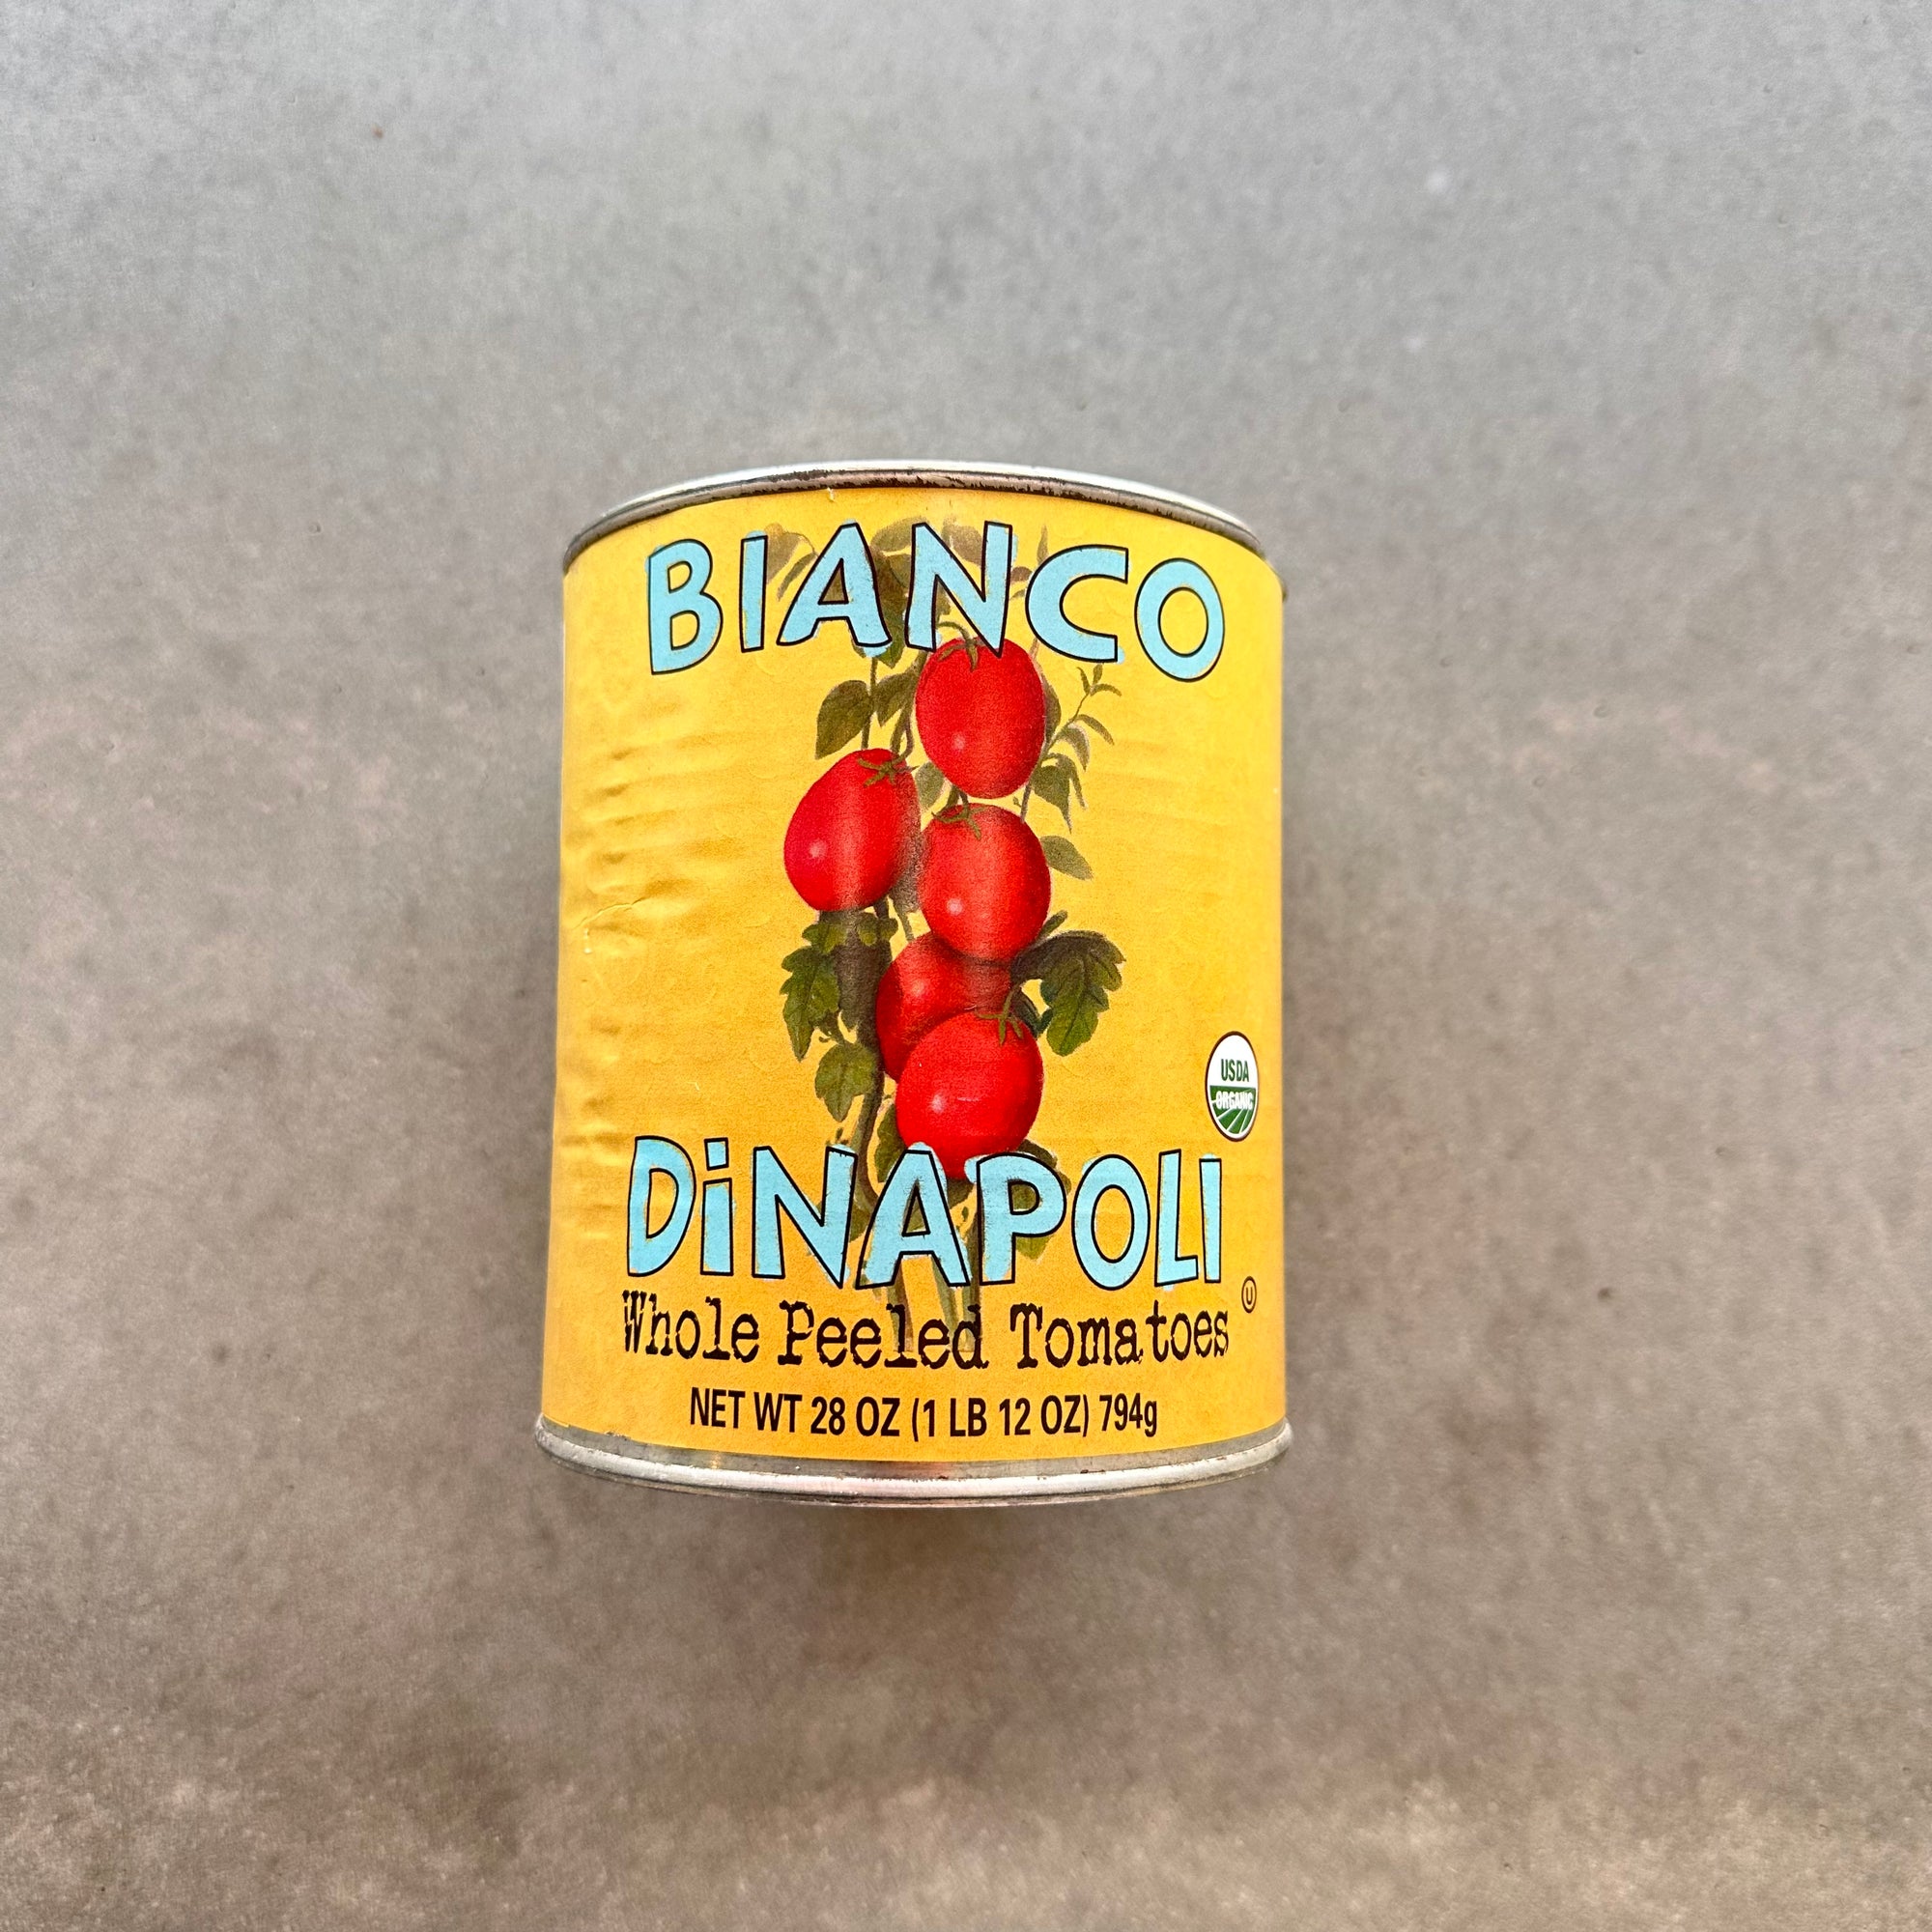 Bianco DiNapoli 28oz Organic Whole Peeled Tomatoes (6 ct)